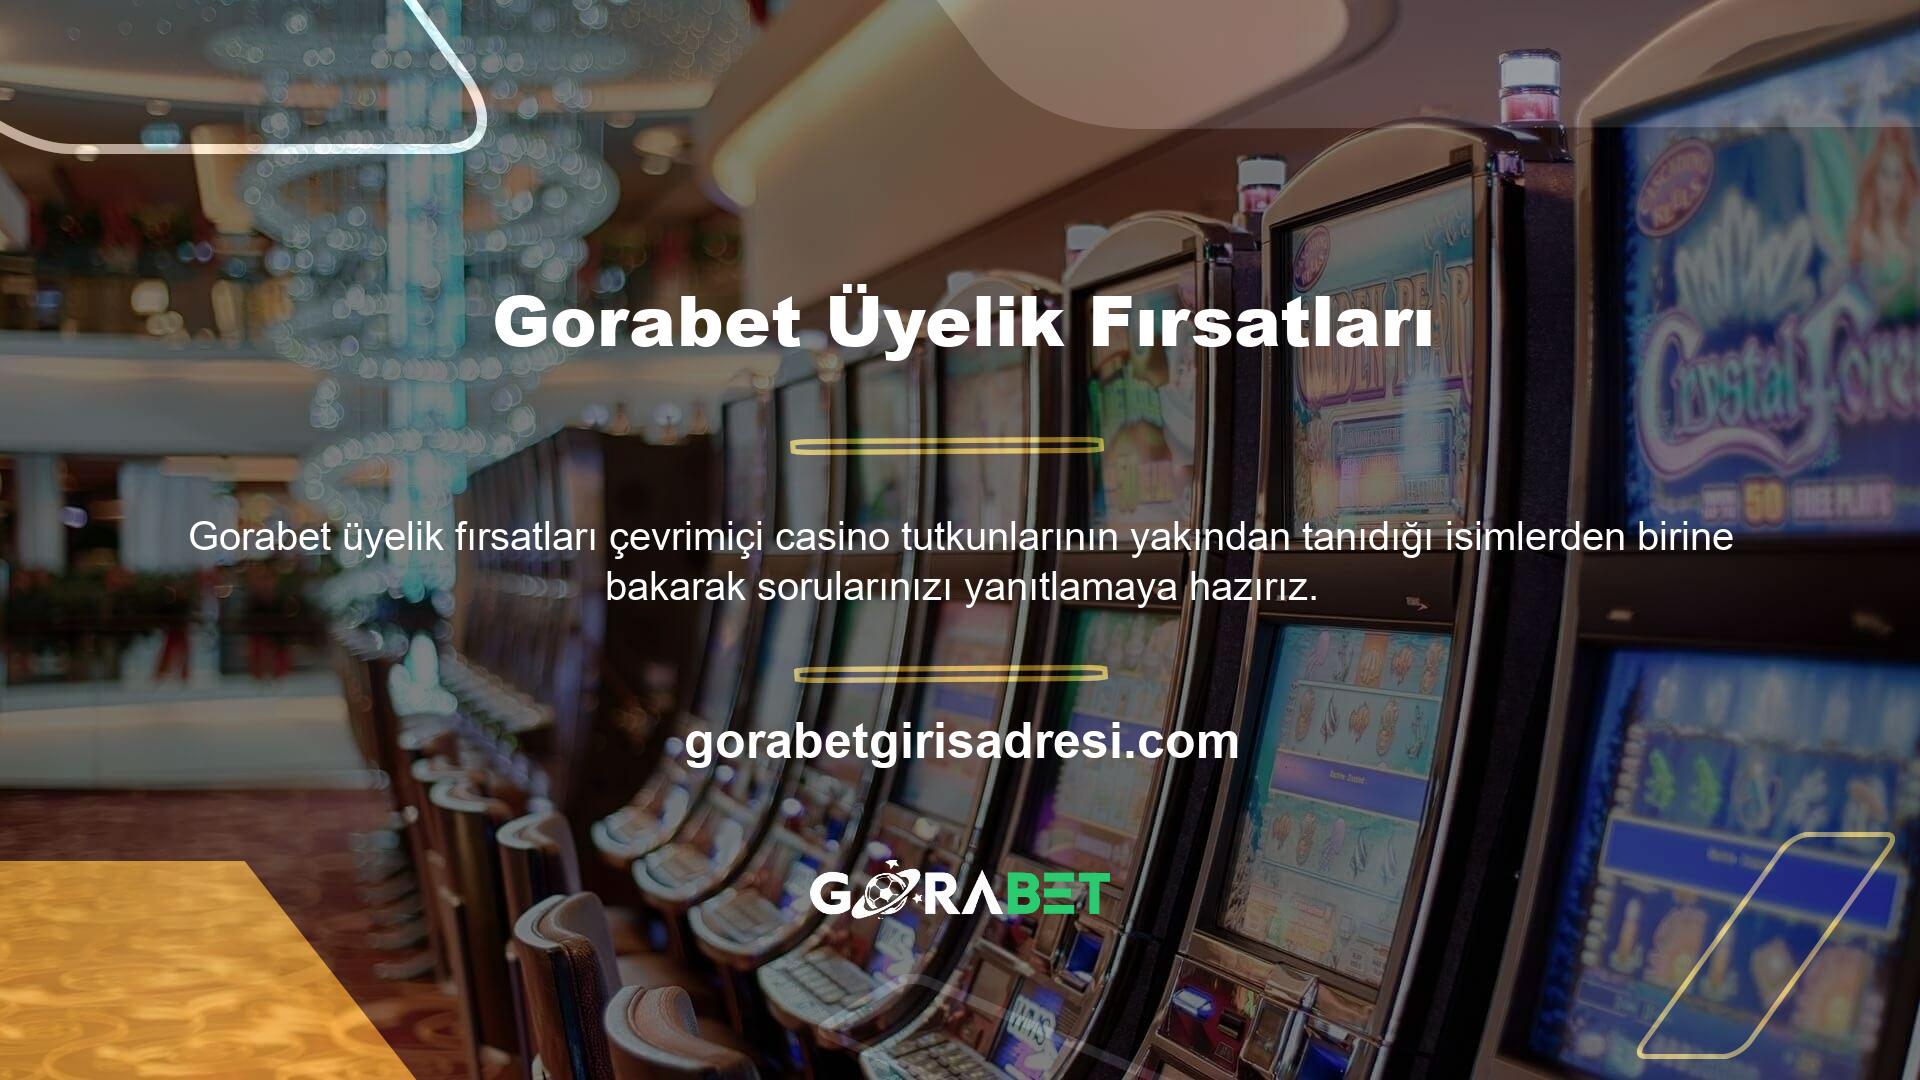 Gorabet bahis sitesi uzun süredir bu alanda hem spor bahisleri hem de casino oyunları sunan sitelerden biridir ve oldukça iyi işler yaptığını görebilirsiniz